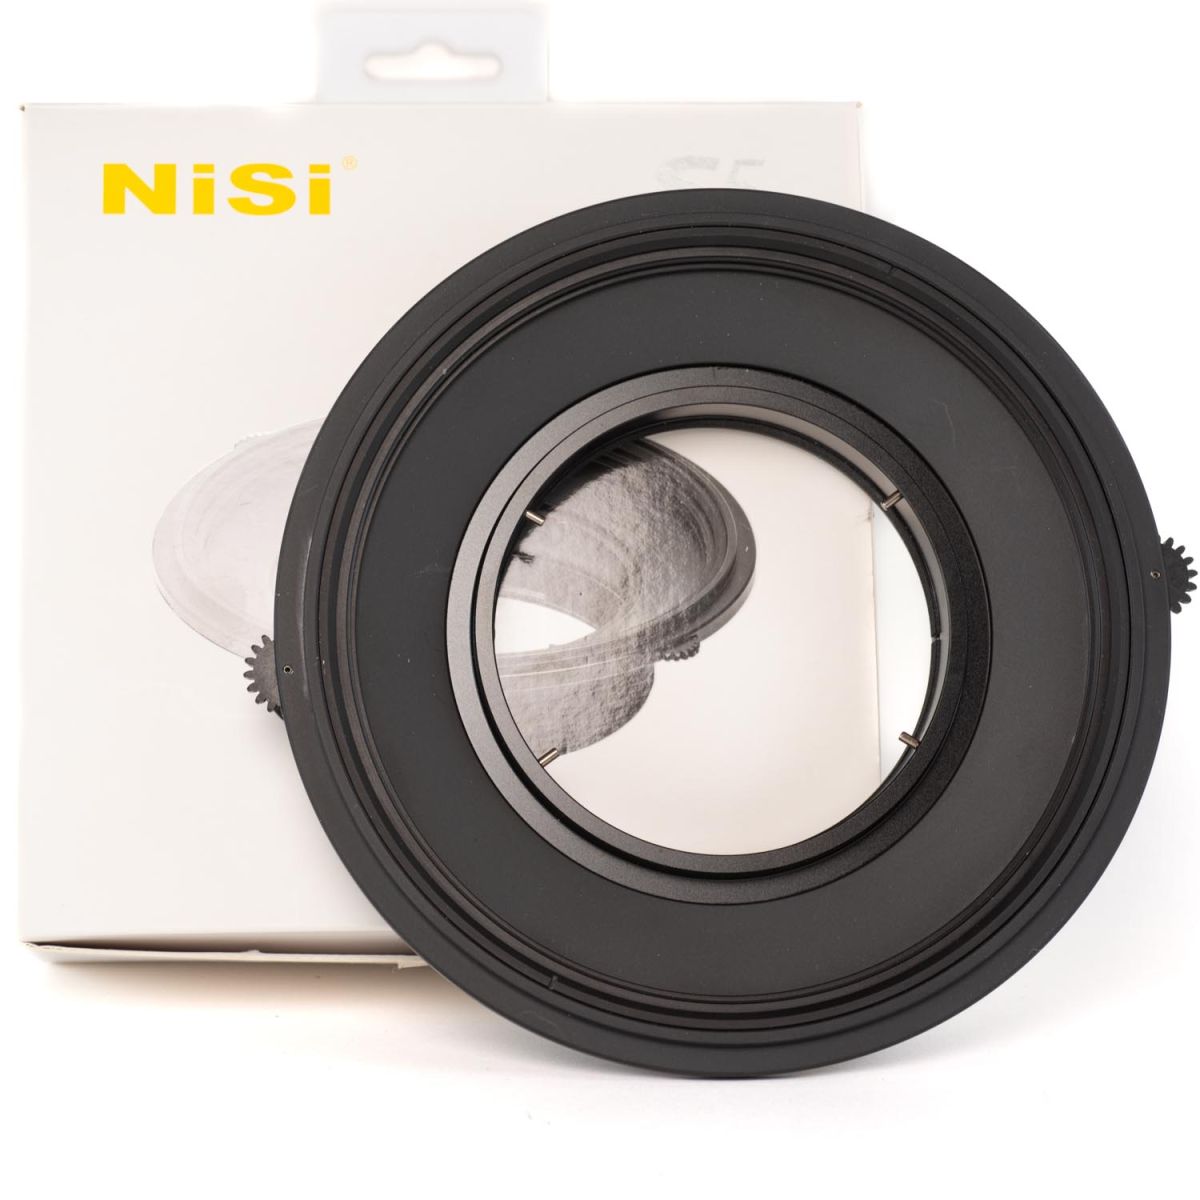 Nisi S5 Porte Filter Holder For Fujinon XF 8-16 F2.8 - *A+*